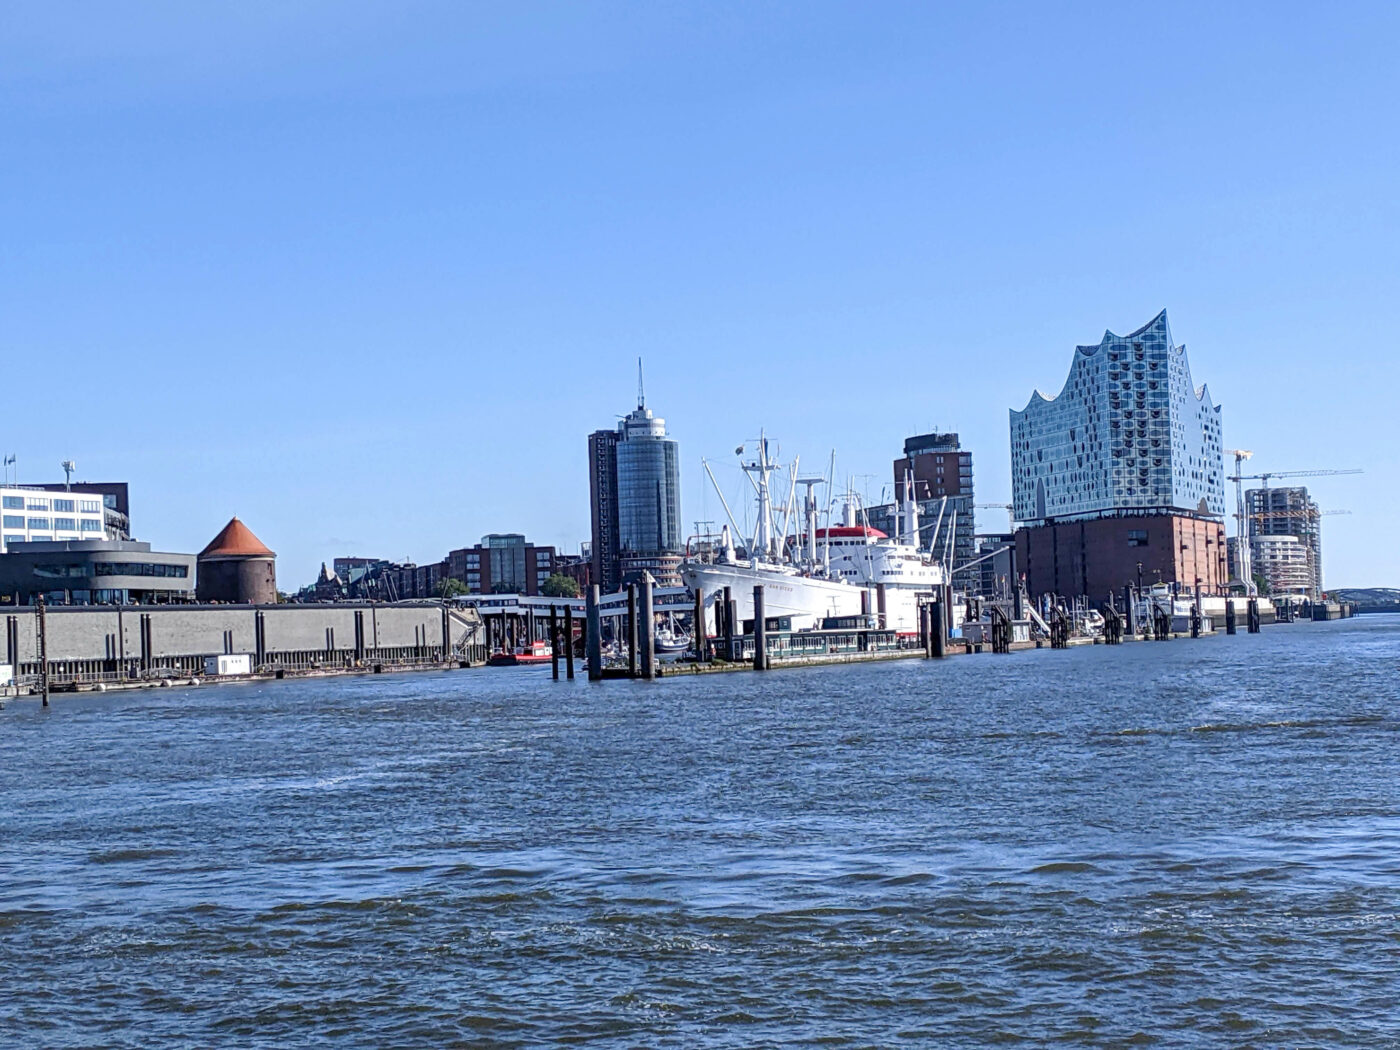 Hamburg mit Elbphilharmonie von der Fähre aus gesehen